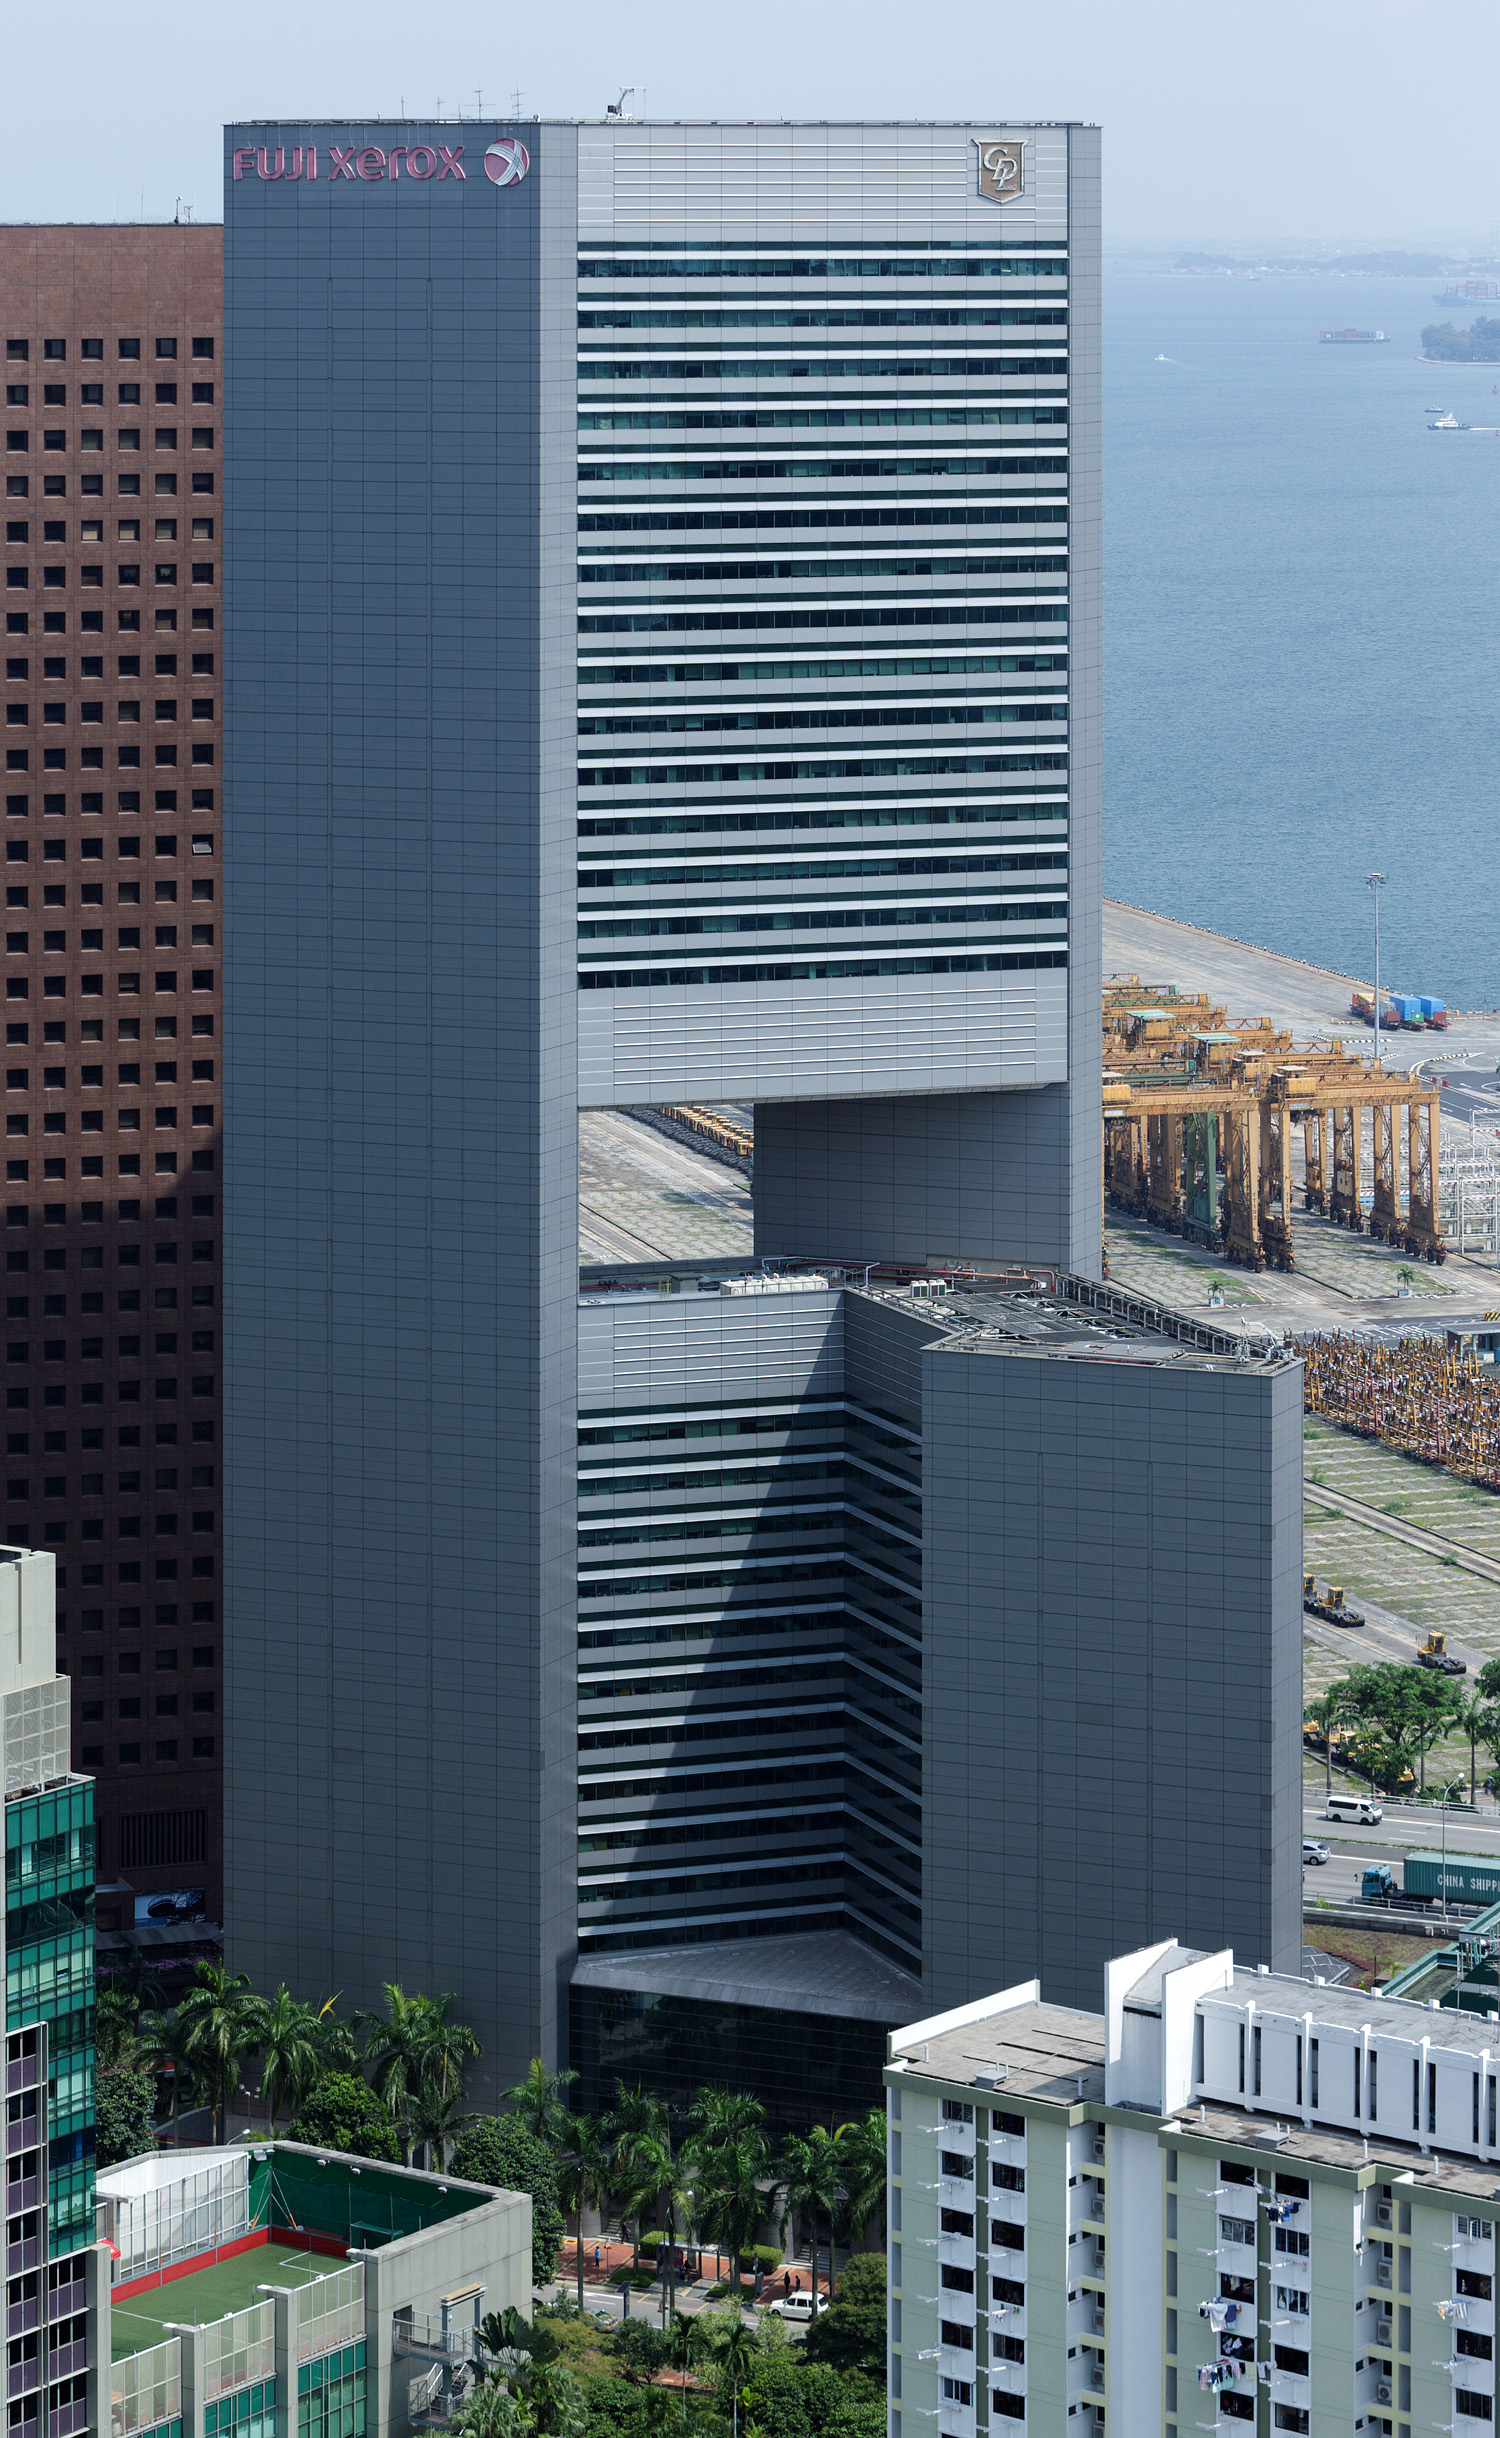 Fuji Xerox Tower, Singapore - View from Pinnacle@Duxton. © Mathias Beinling